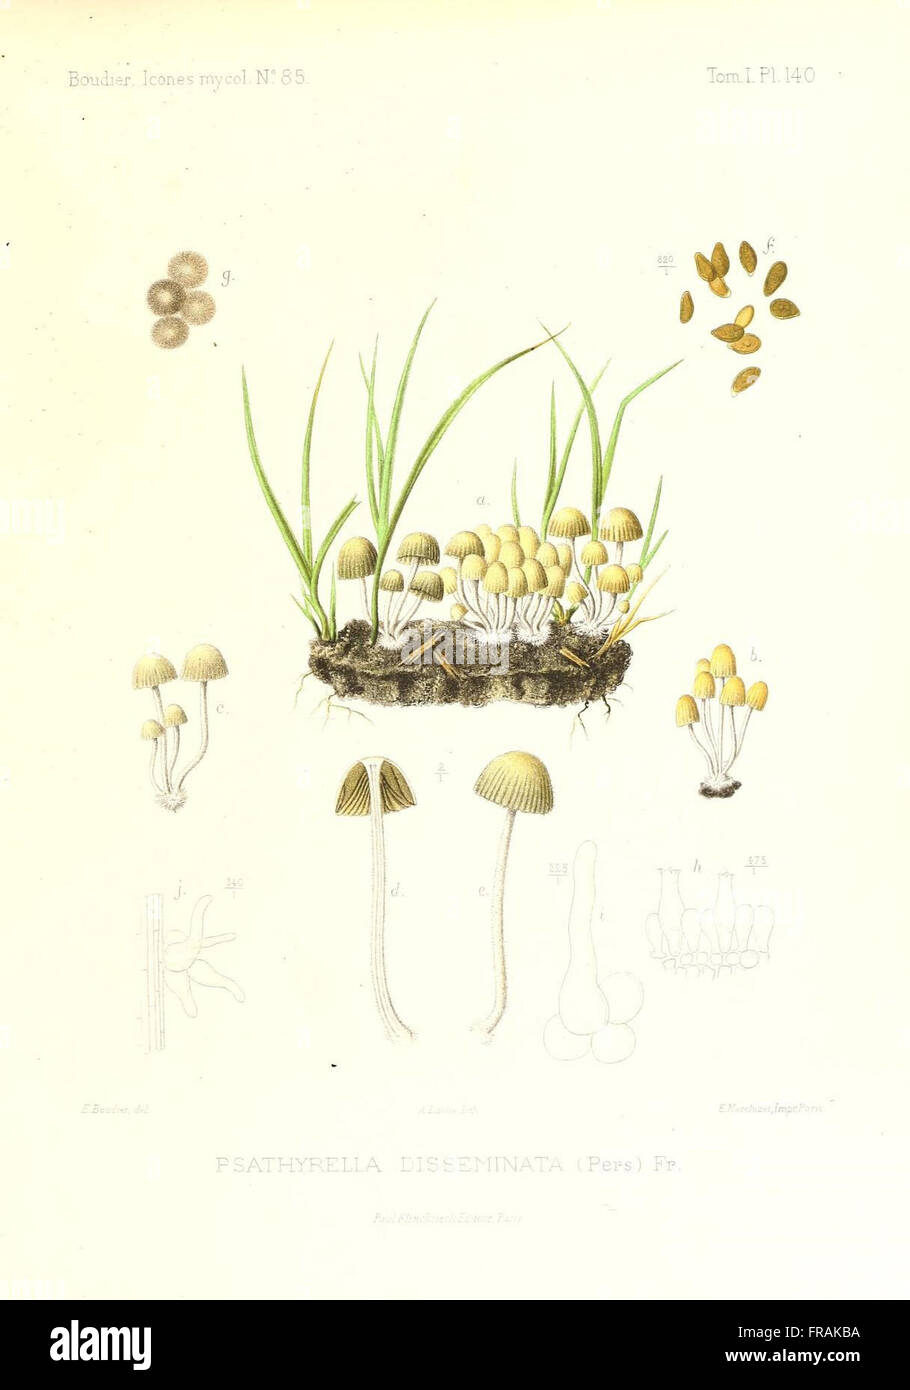 Icones mycologicC3A6, ou Iconographie des champignons de France principalement Discomycetes (Pl. 140) Stock Photo